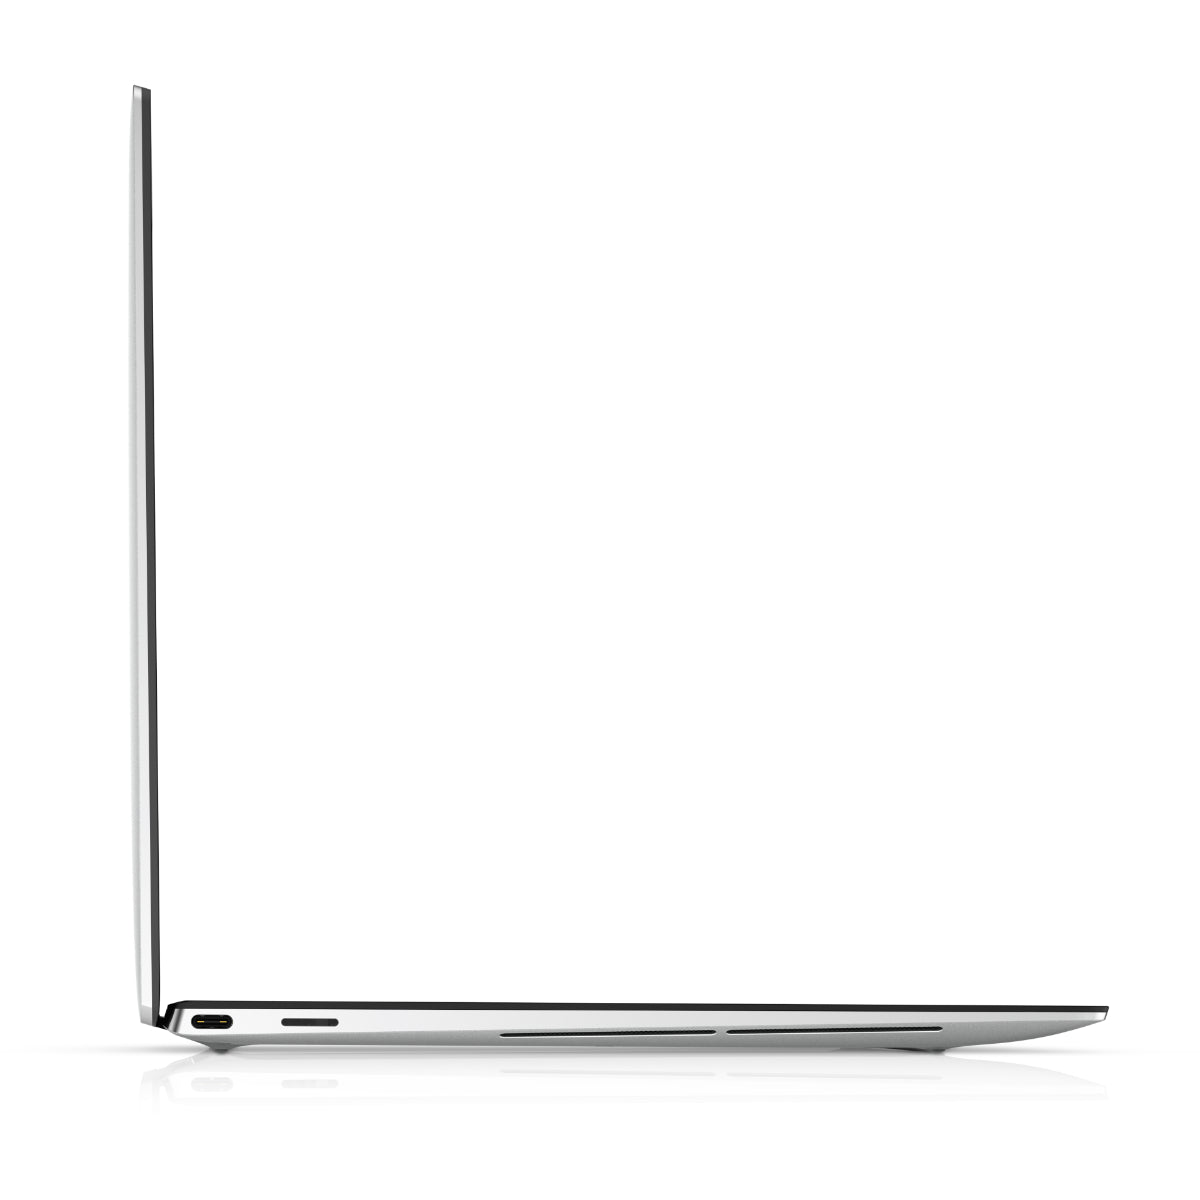 Dell XPS 13 9310 I5 11th Gen 2.4 Ghz Quad Core Laptop